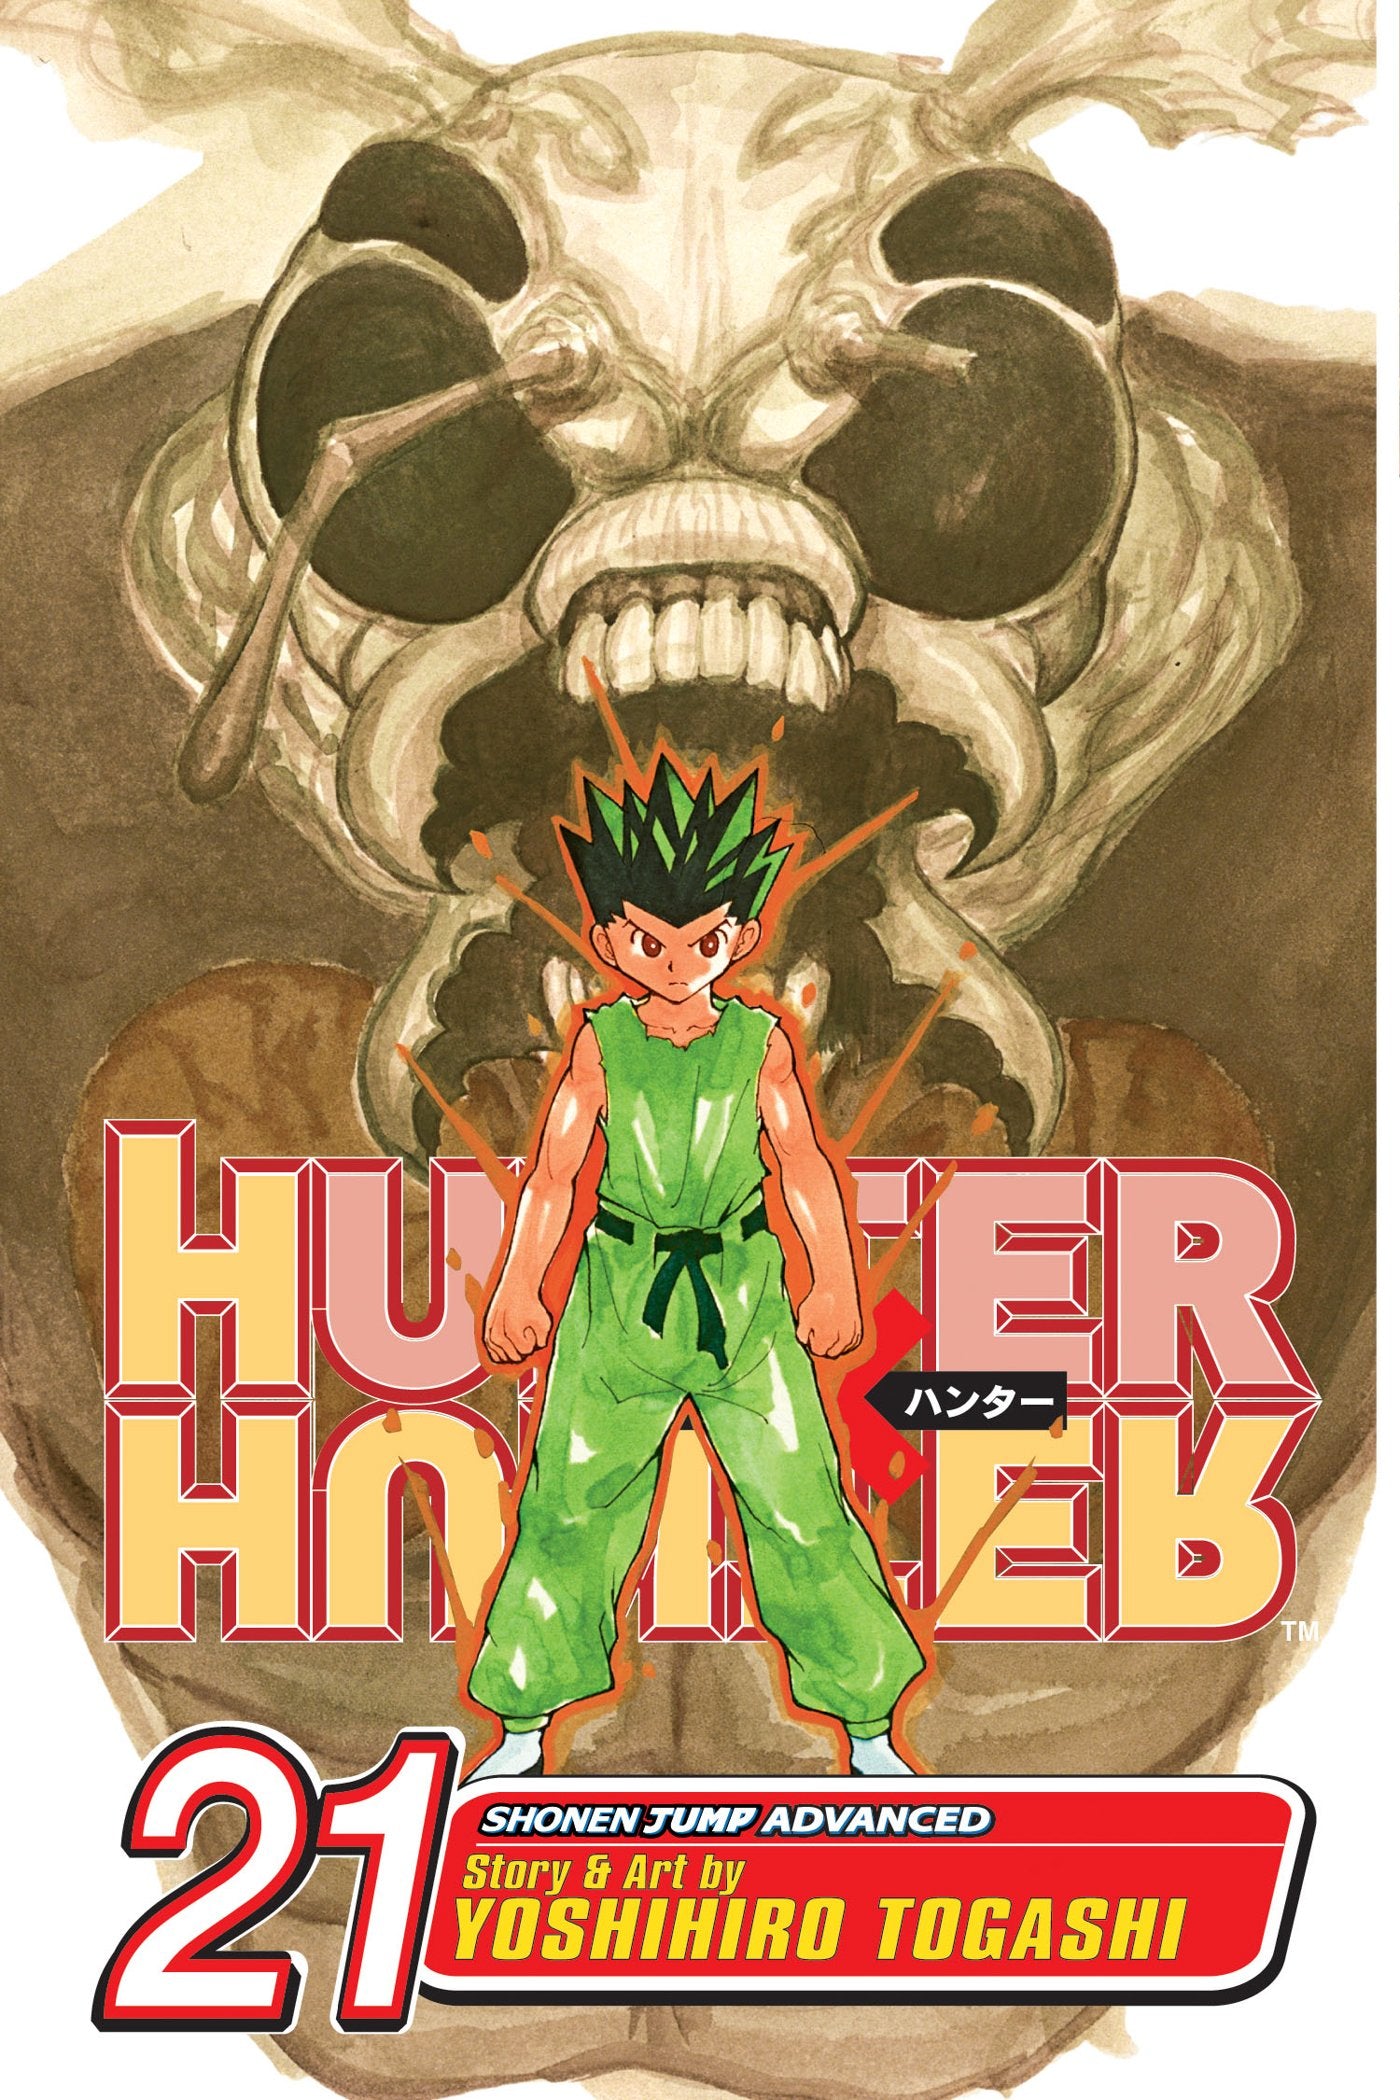 Hunter x Hunter: Vol. 21 – Geek Forest